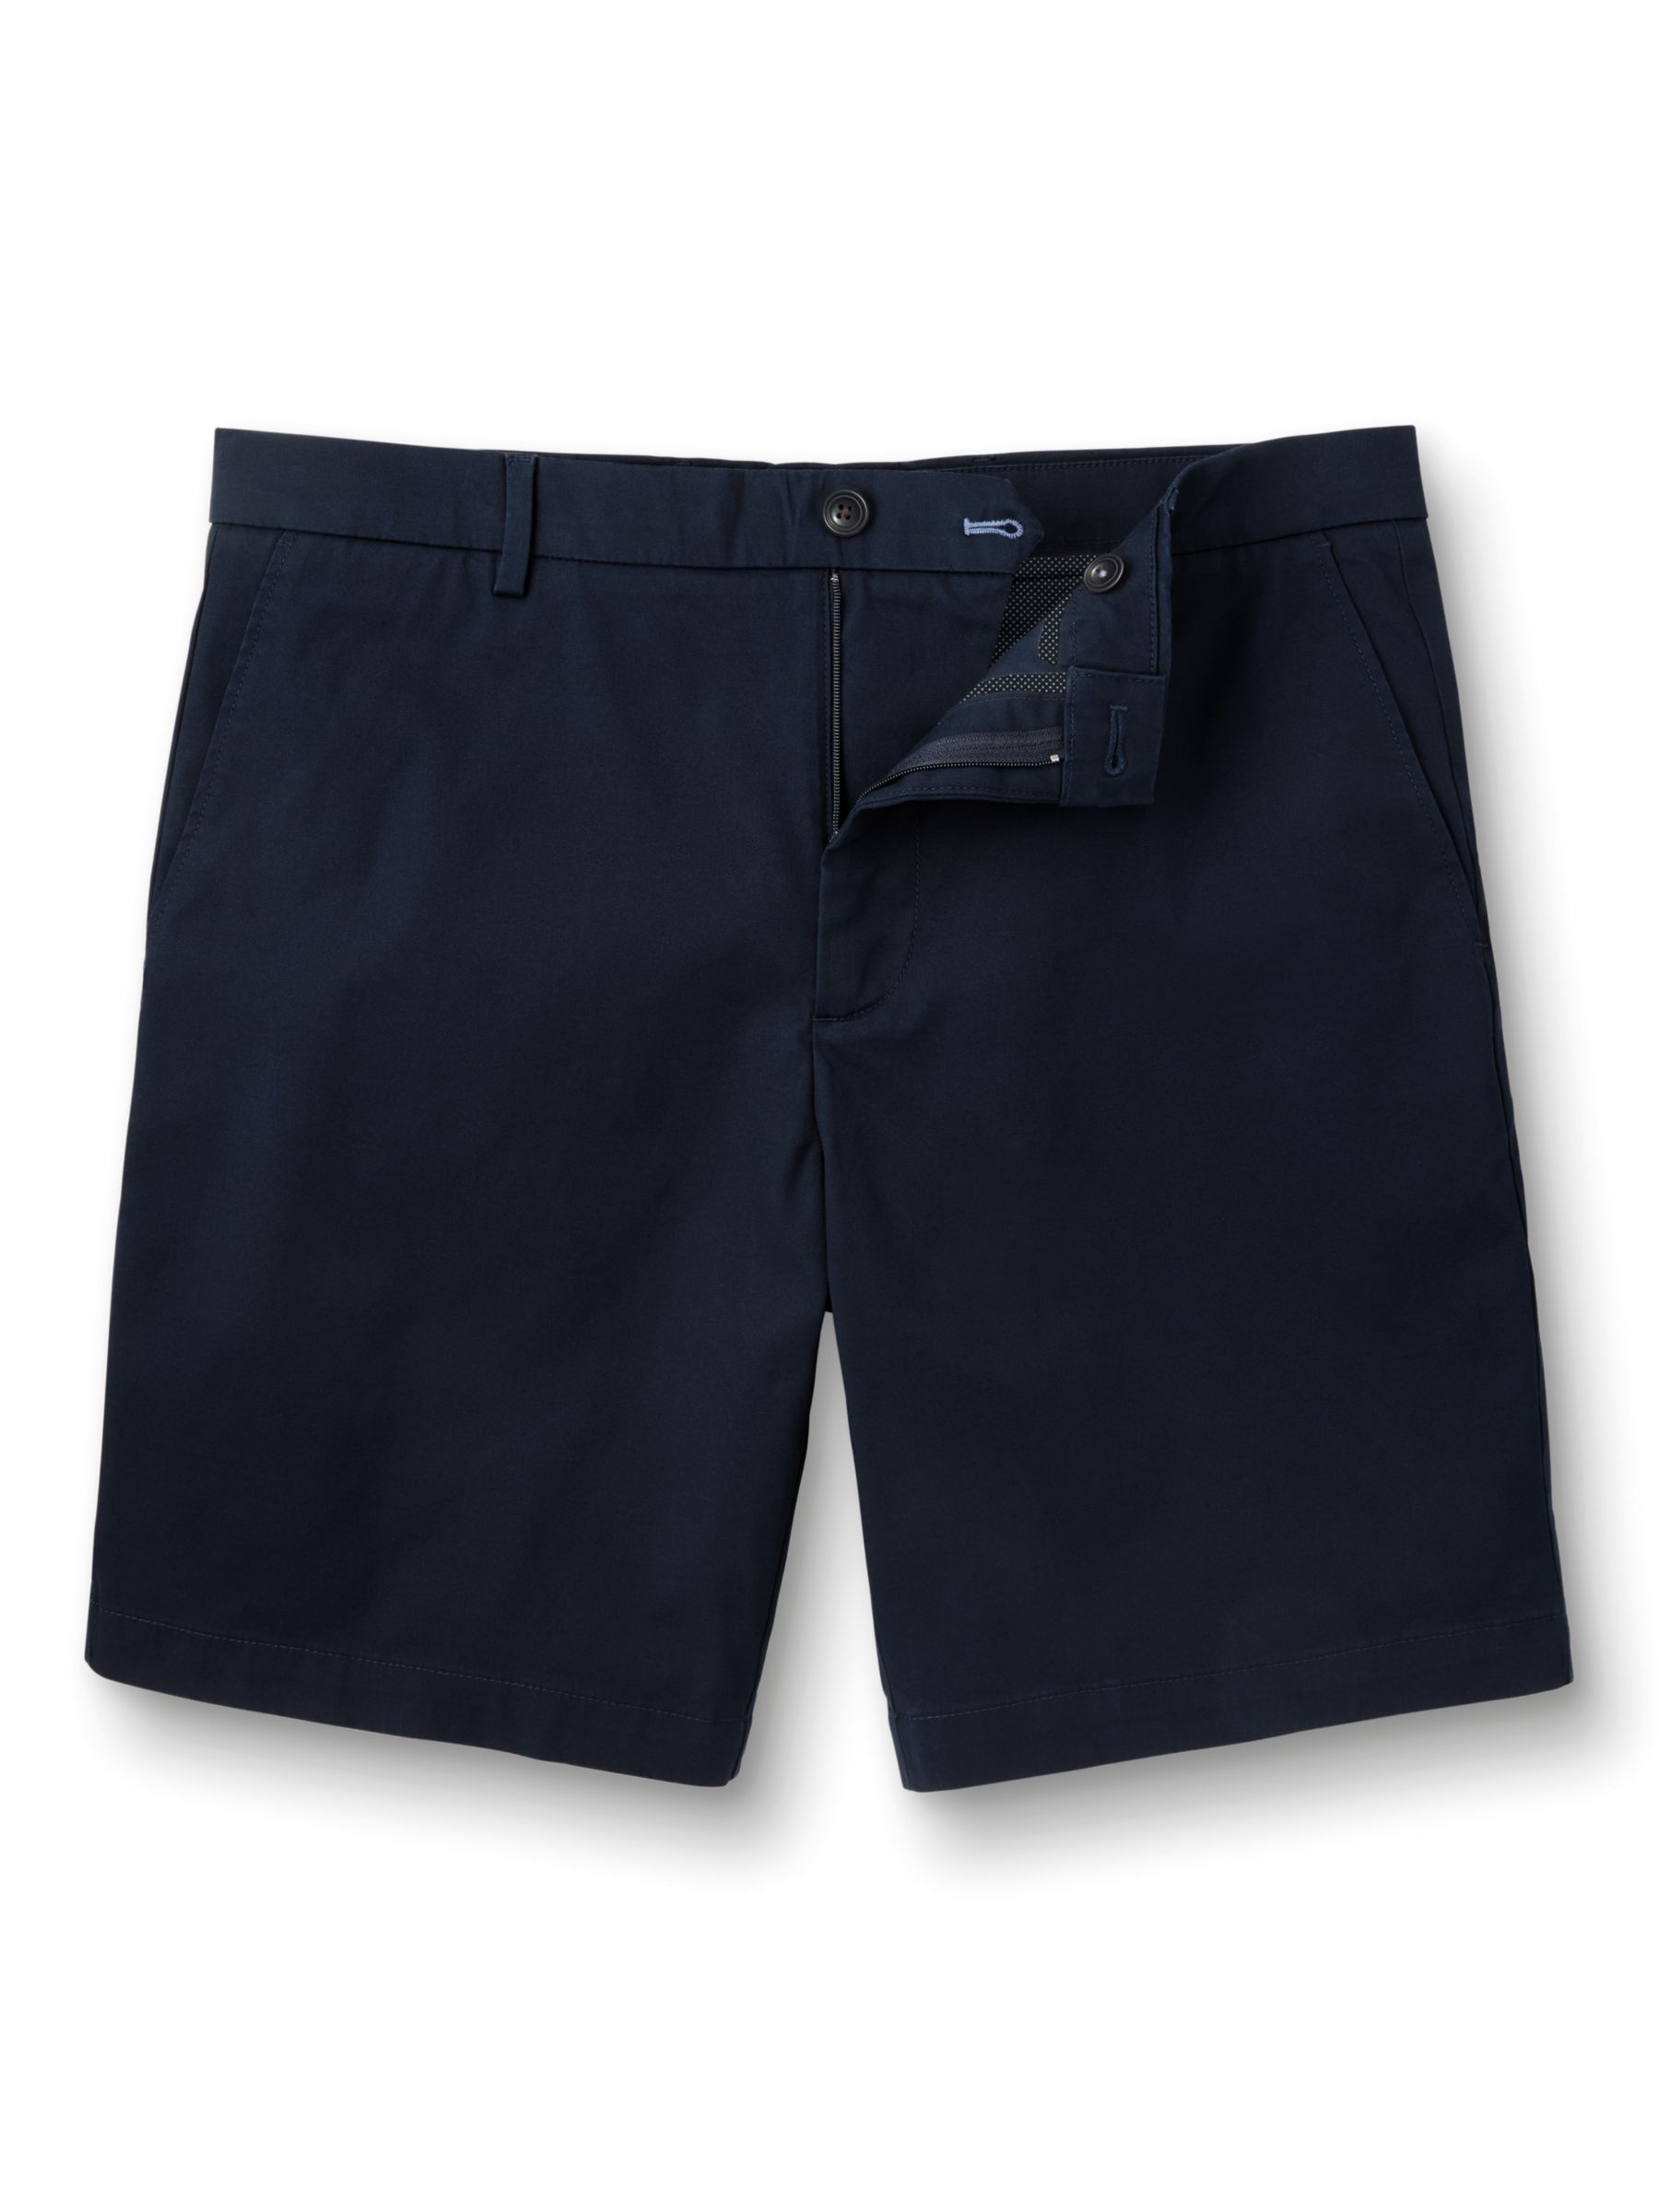 Buy Charles Tyrwhitt Chino Cotton Shorts, Dark Navy Online at johnlewis.com